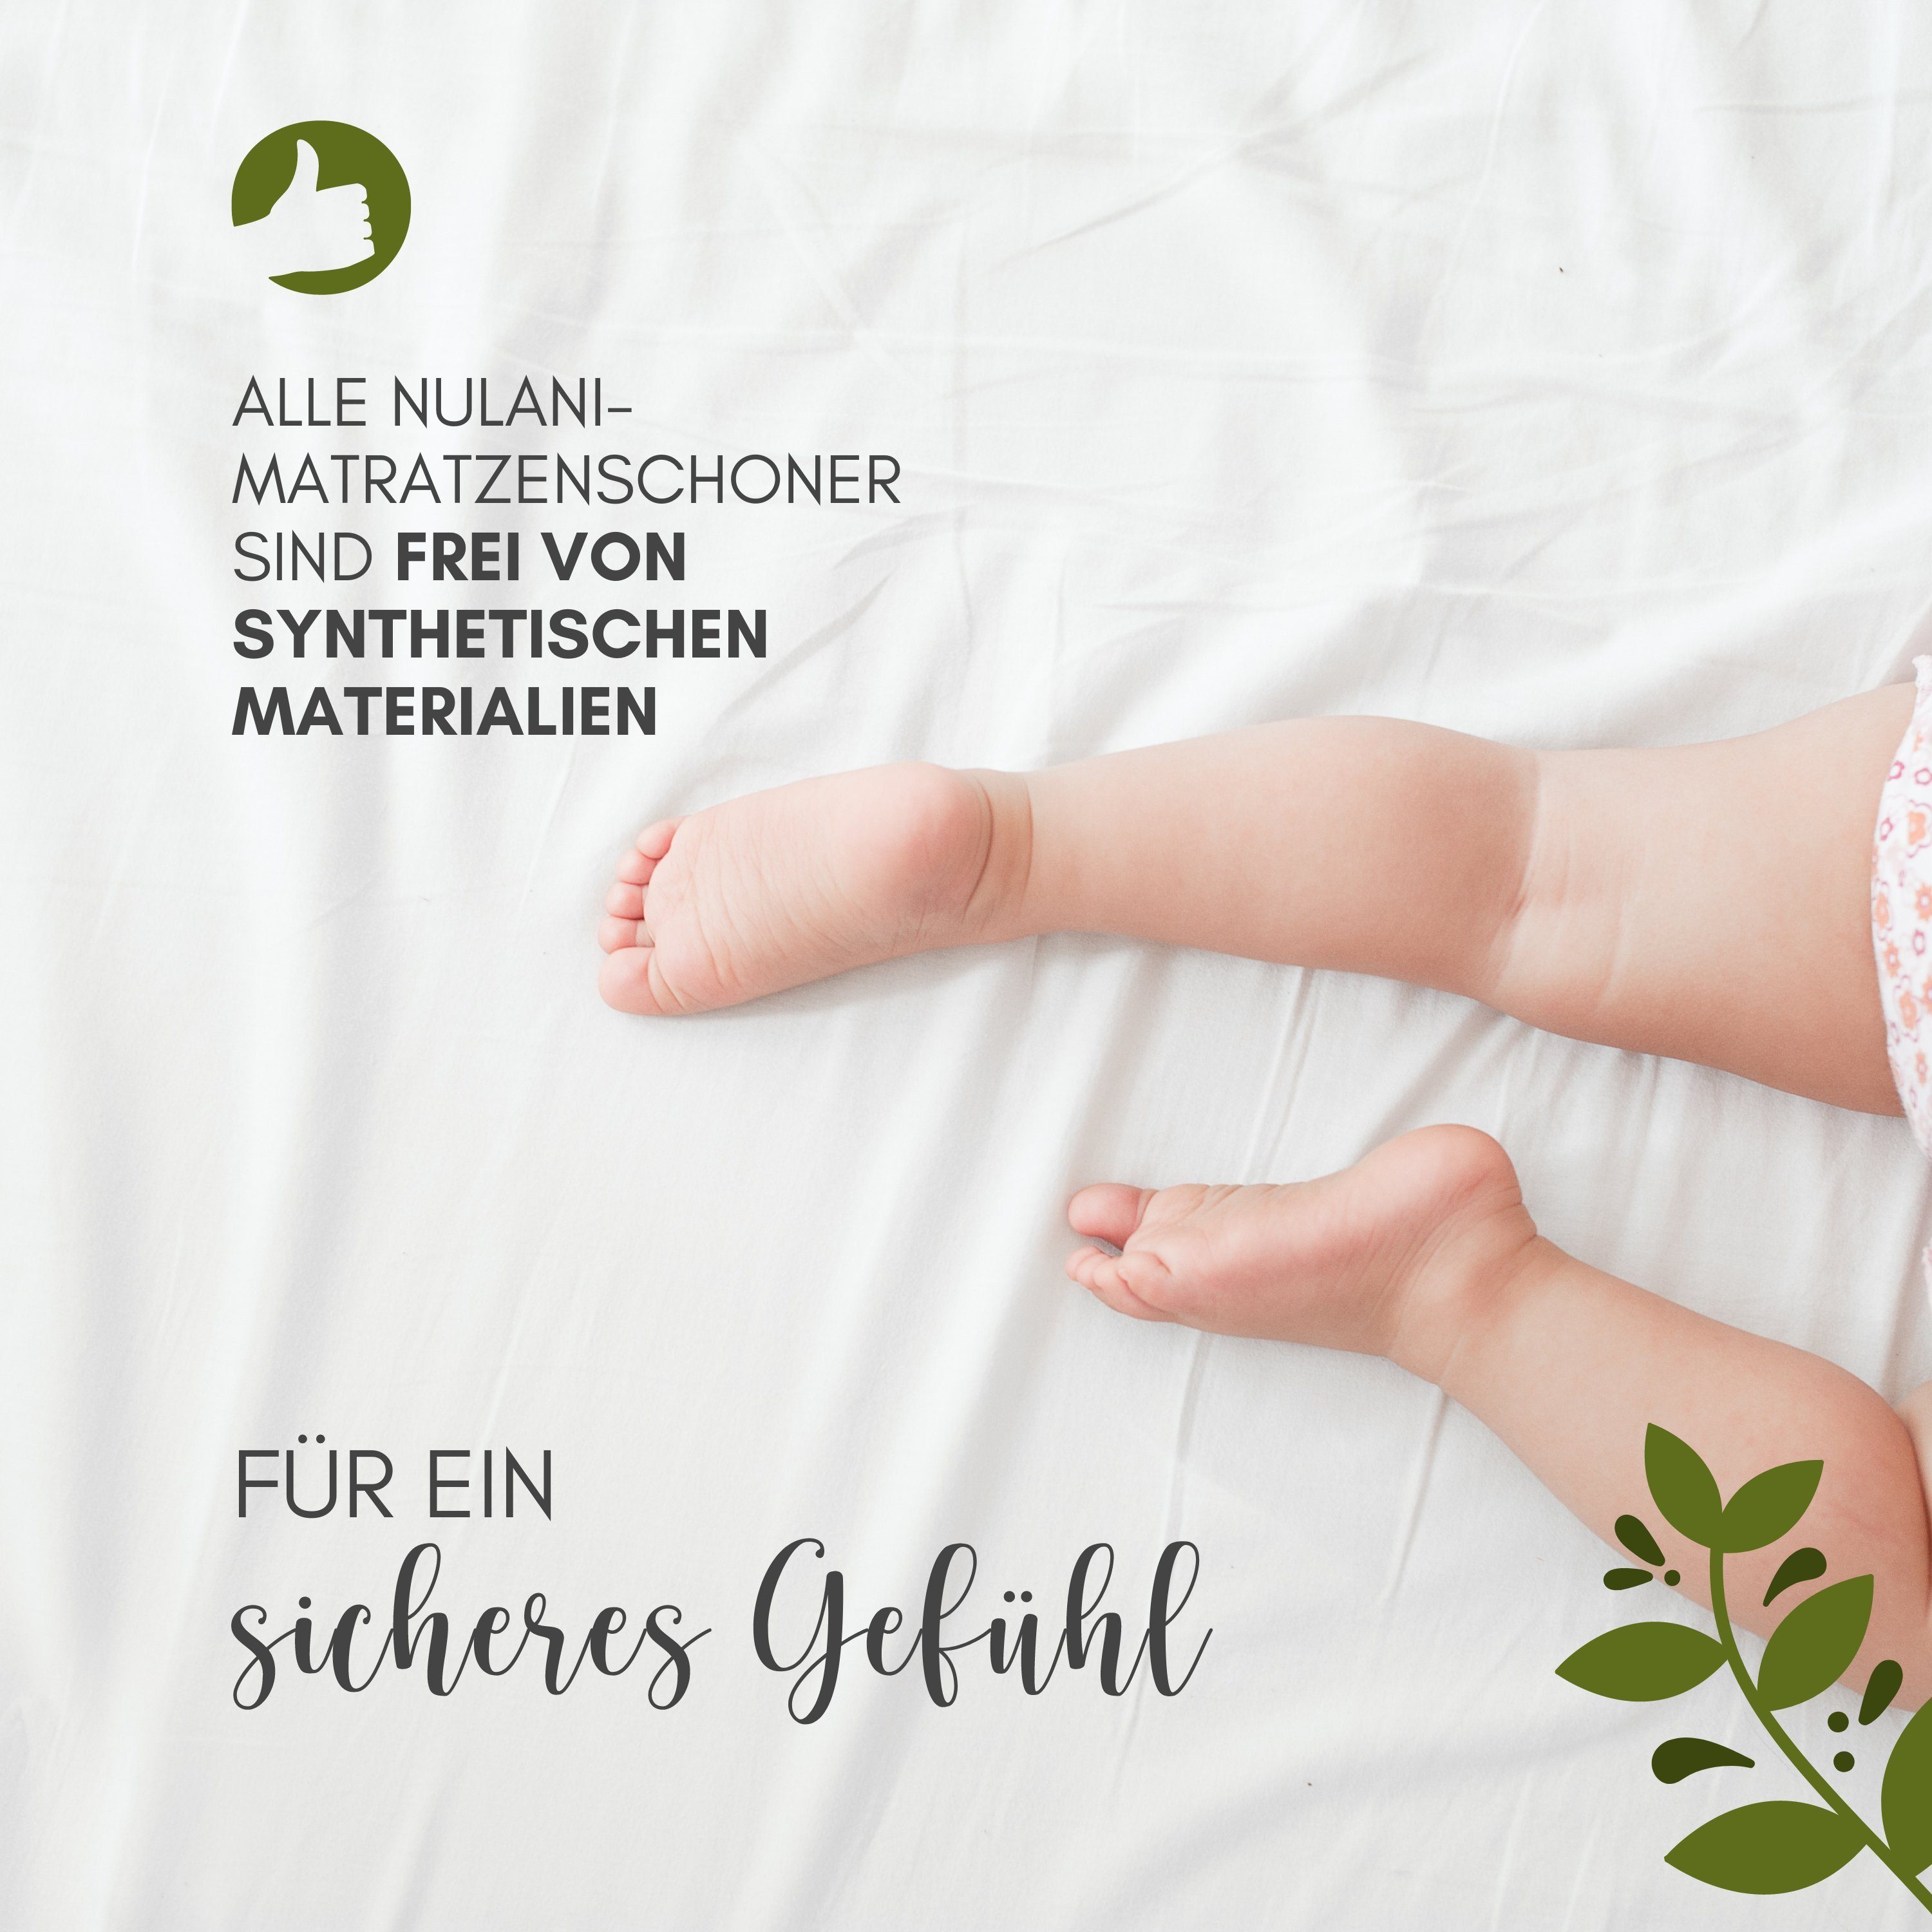 Matratzenschutzbezug Moltonauflage und IN Bio-Baumwolle GERMANY ÖKOTEX 100 aus MADE HOME, für hautfreundlich geeignet NULANI Allergiker - besonders